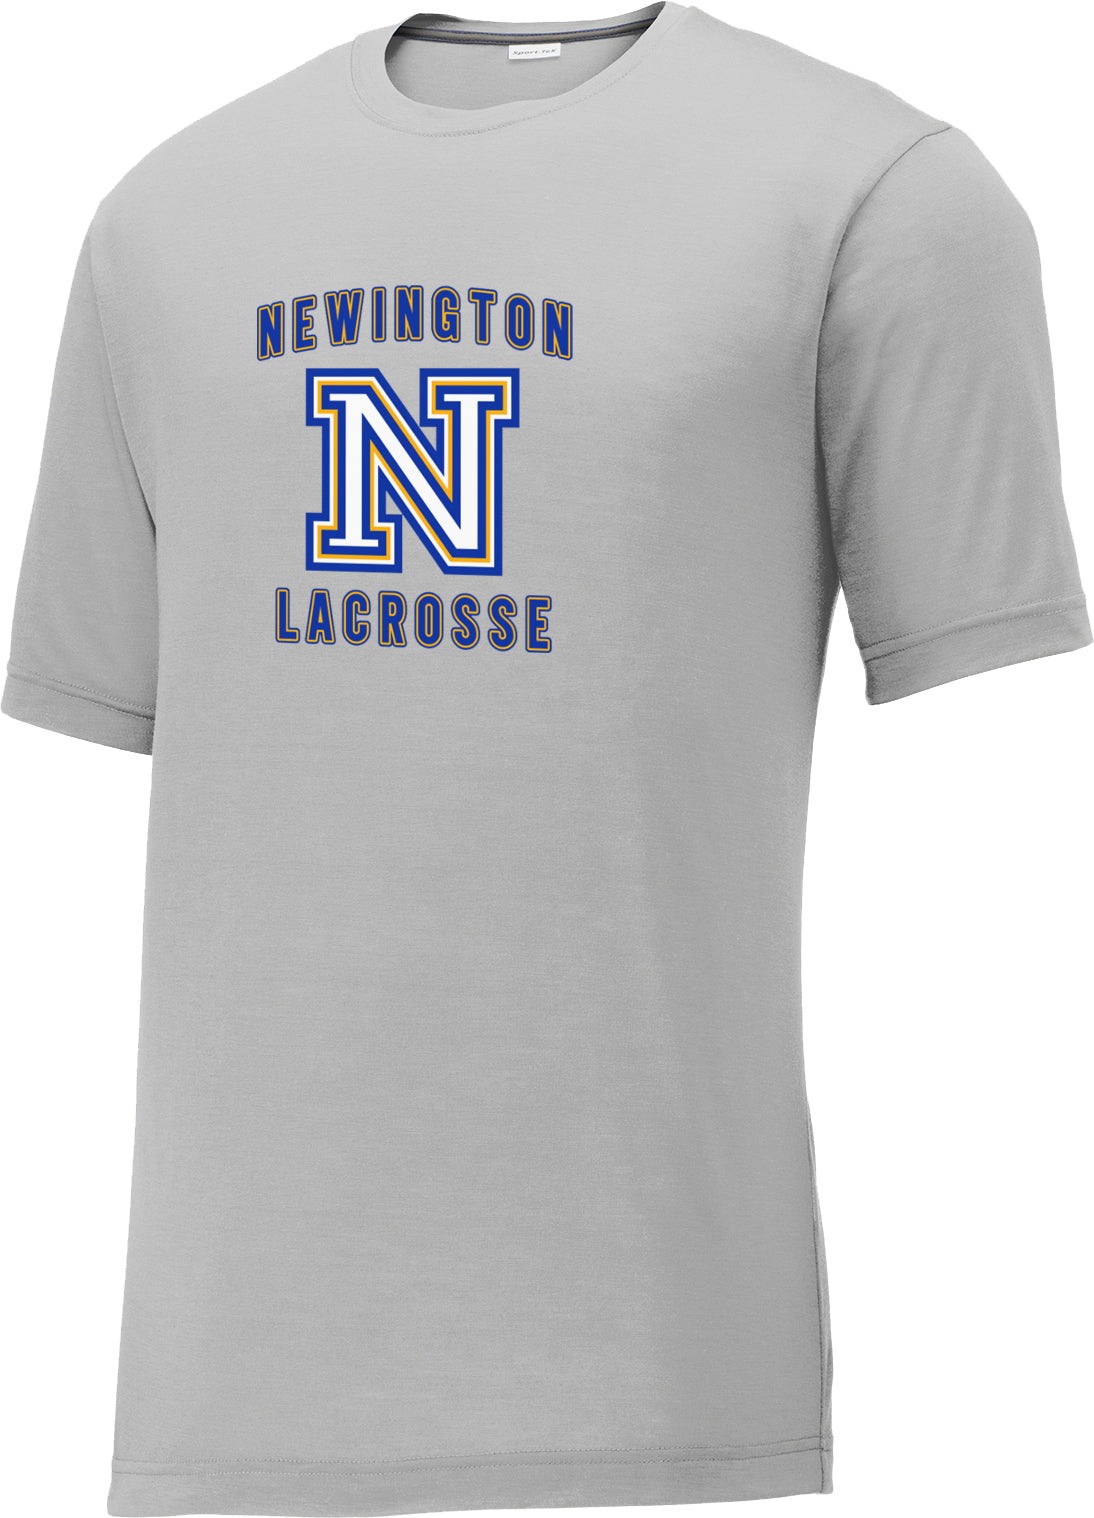 Newington Lacrosse Silver CottonTouch Performance T-Shirt